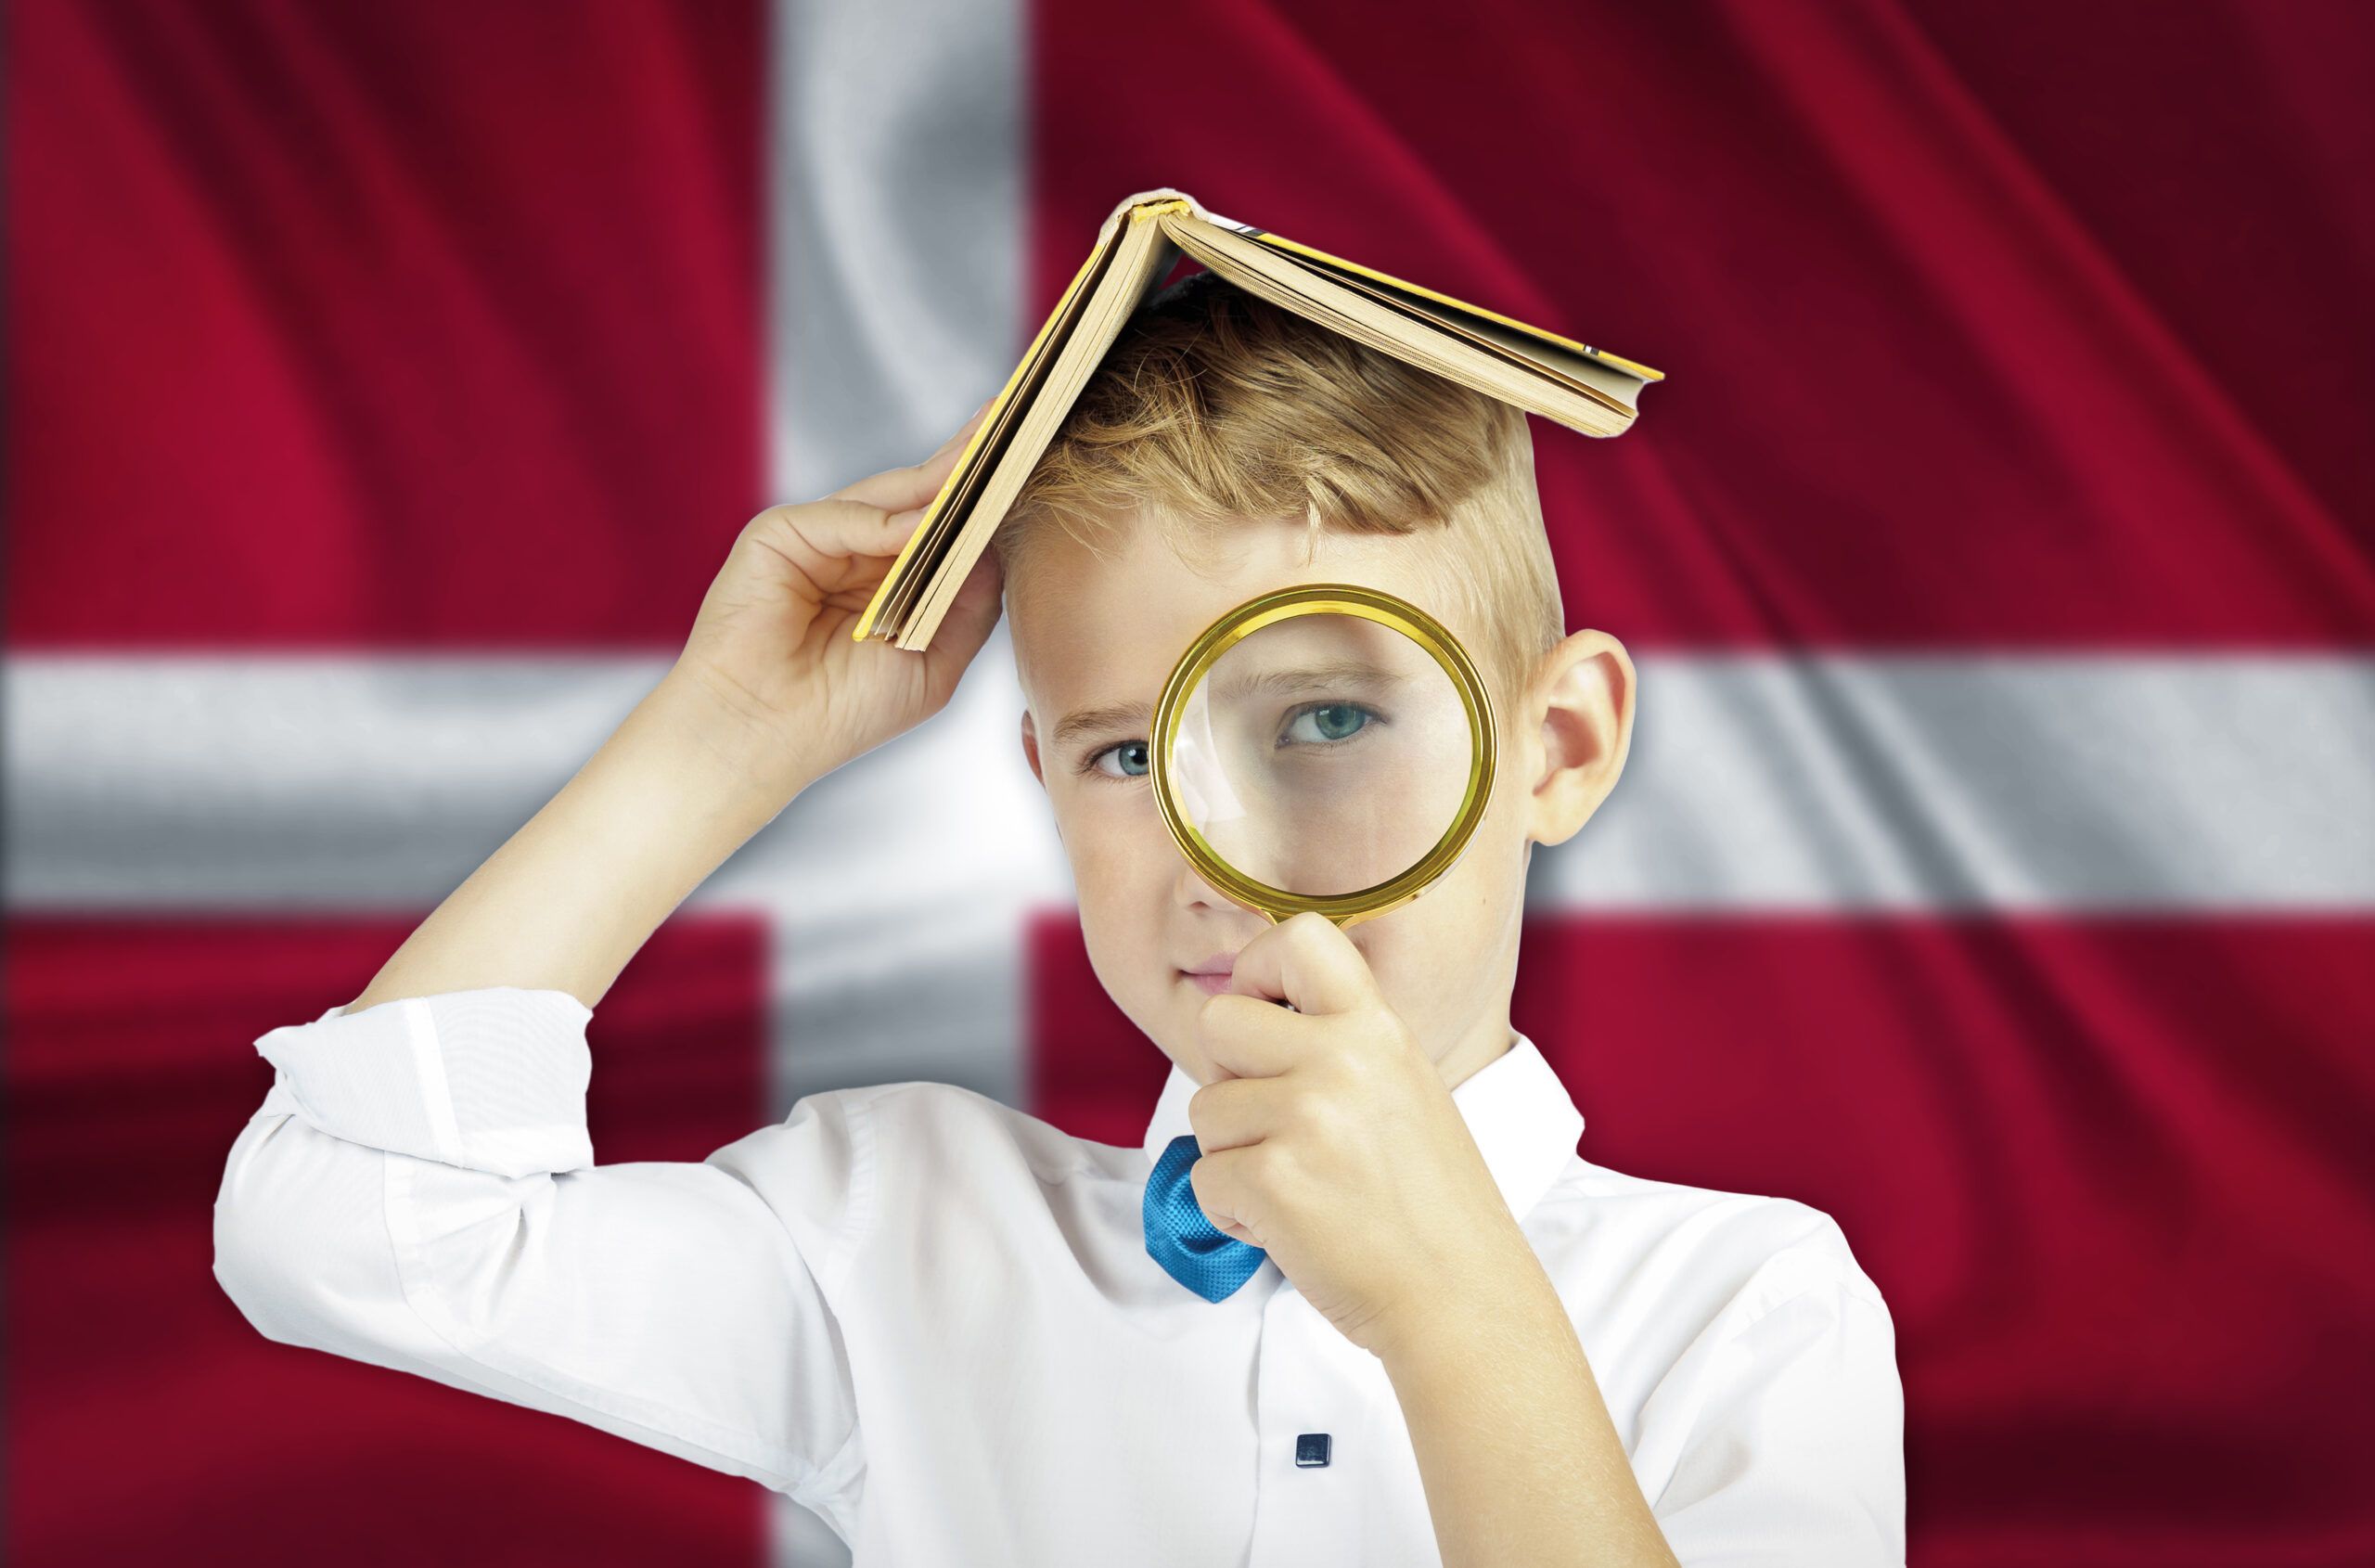 Ein Junge schaut durch eine Lupe vor einer dänischen Flagge.